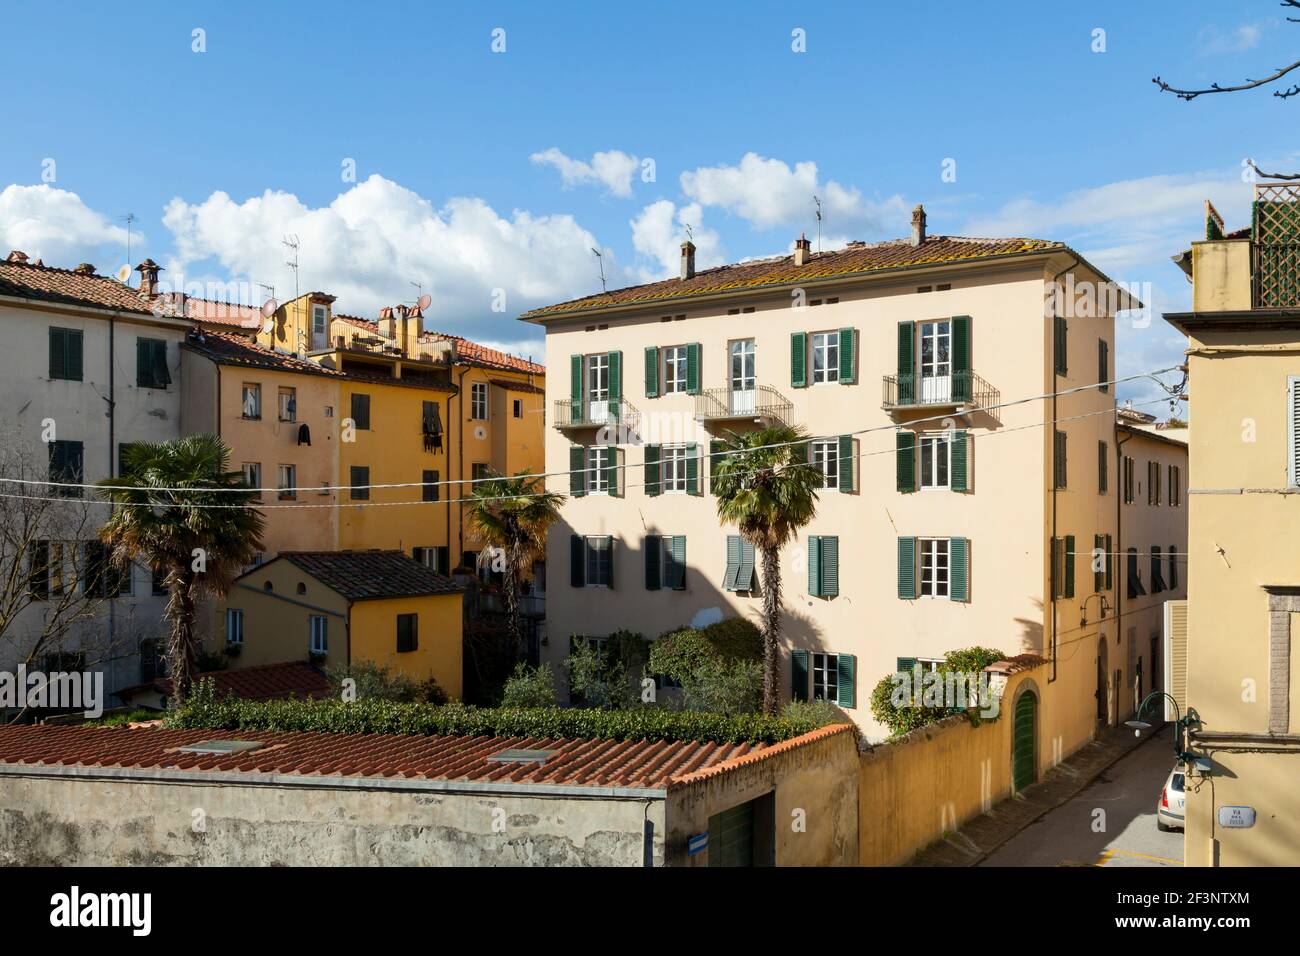 Allgemeine Ansichten der typischen toskanischen Architektur, Häuser und Geschäfte in Lucca, Toskana. Stockfoto